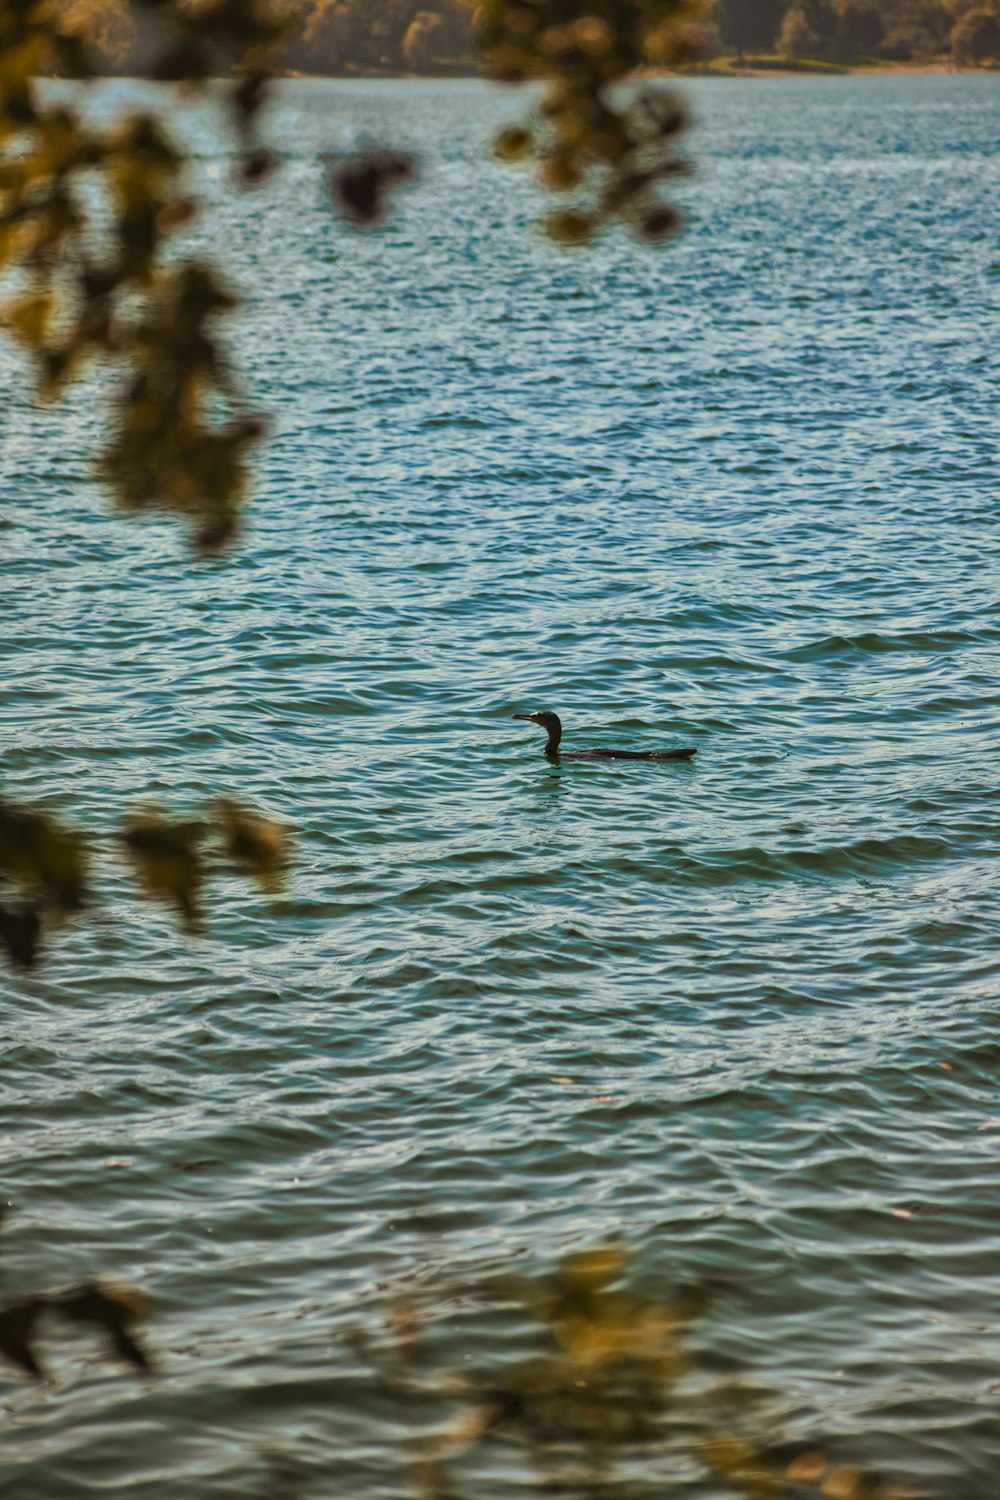 un pájaro nadando en un lago rodeado de árboles